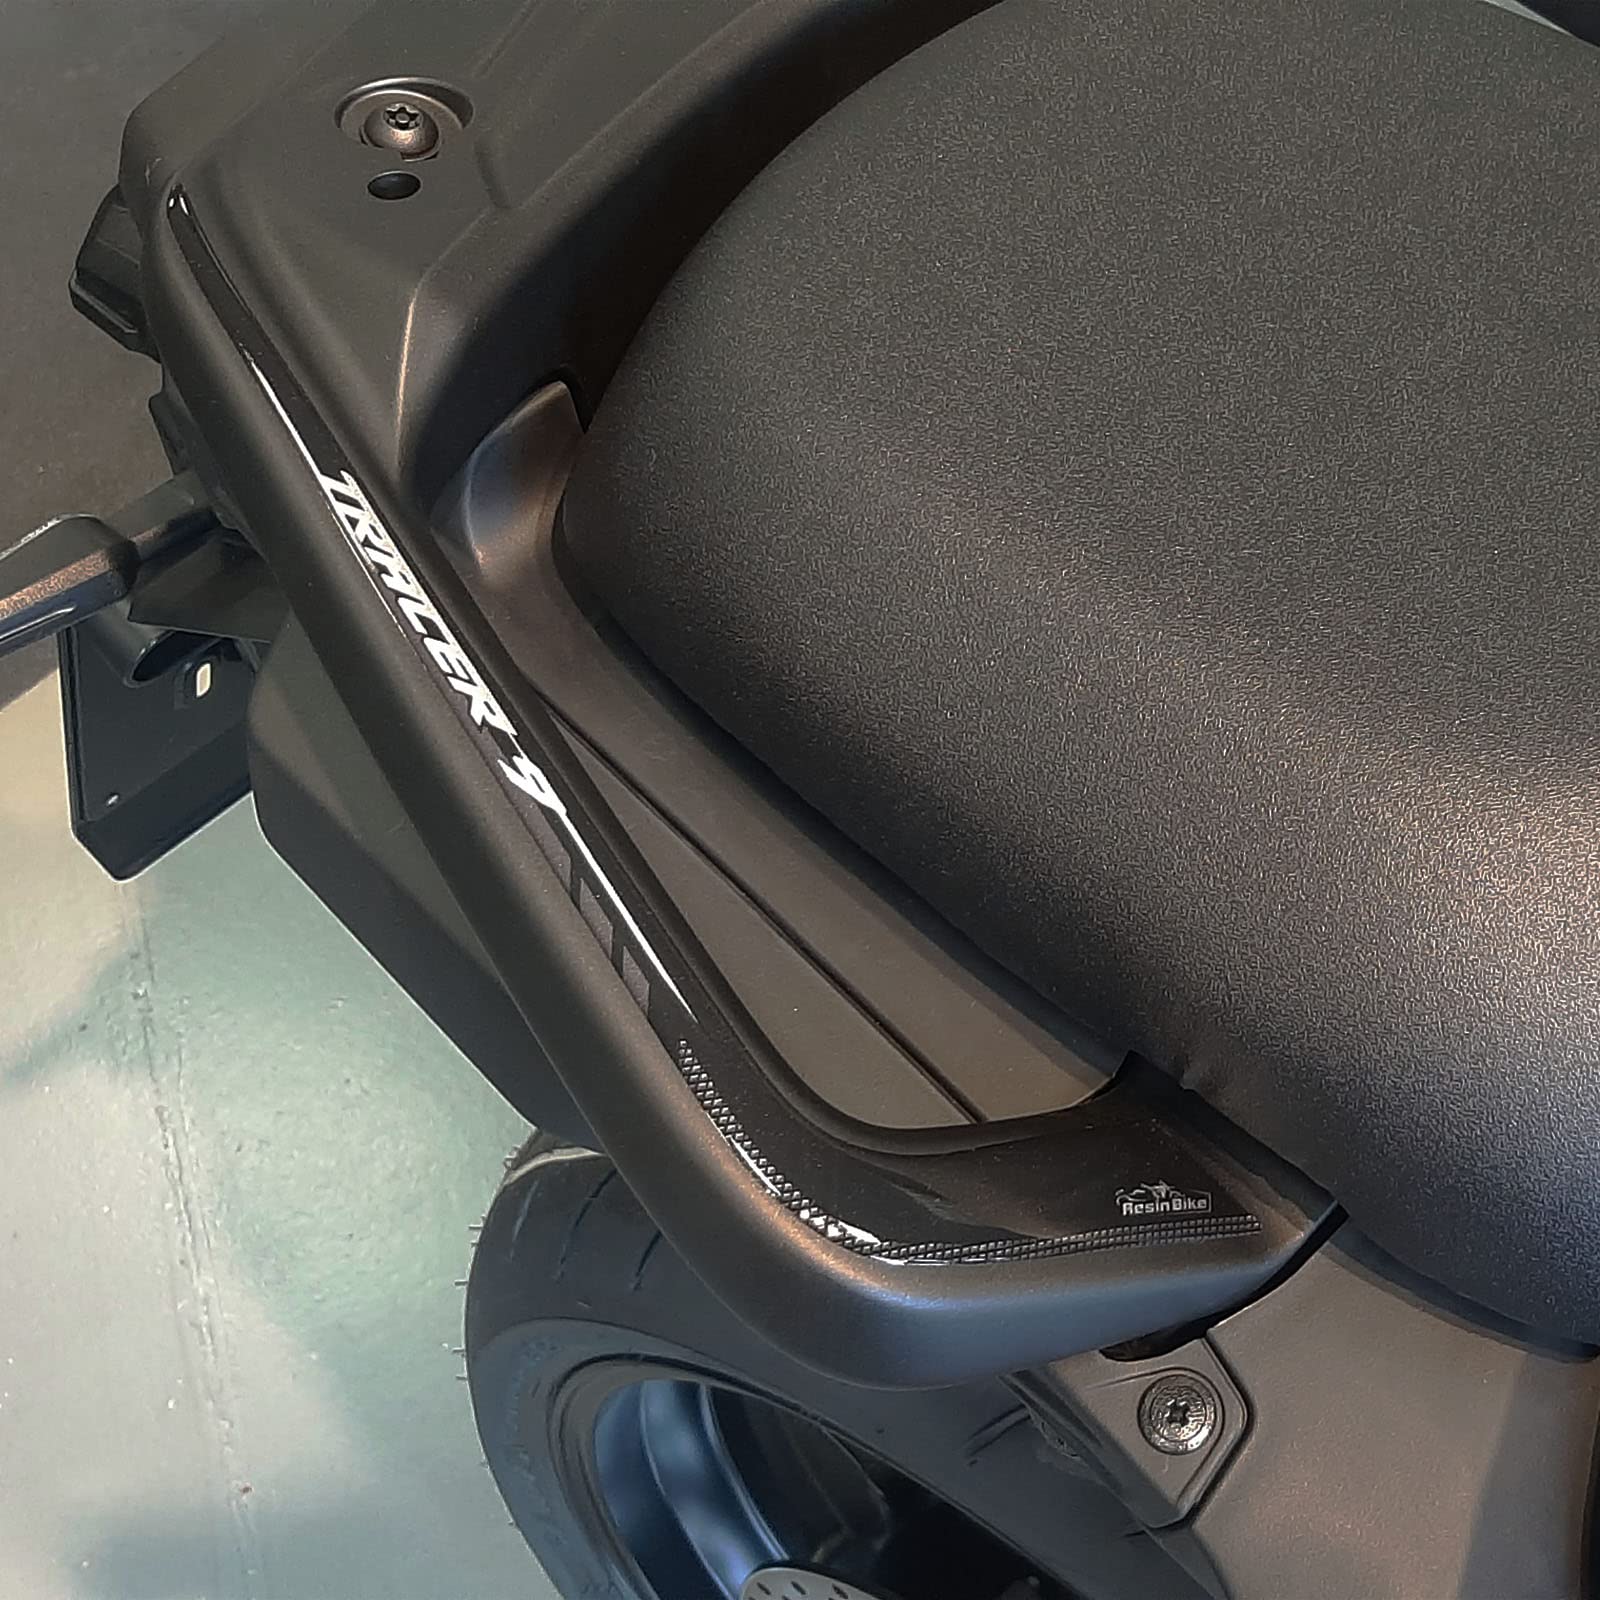 Resin Bike Aufkleber für Motorrad Kompatibel mit Yamaha Tracer 9 2021. Griffschutz für den Beifahrer vor Stößen und Kratzern. Paar 3D-Harzklebstoff - Stickers - Made in Italy von Resin Bike